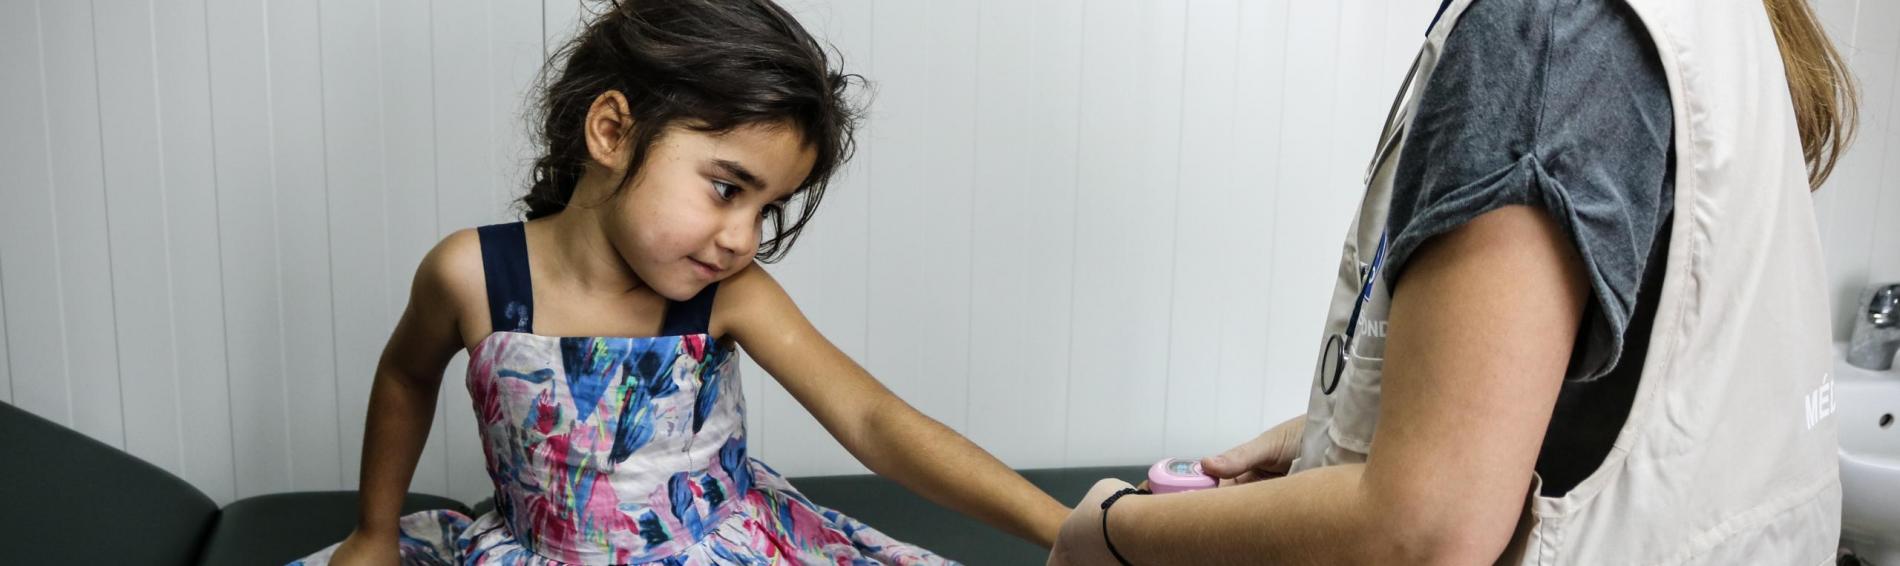 In het dokterskabinet in het Griekse vluchtelingenkamp Elliniko, Athene. Een meisje met bloemetjesjurk houdt haar arm gestrekt voor zich uit zodat de kinderdokter van Dokters van de Wereld in Griekenland haar bloeddruk kan meten.